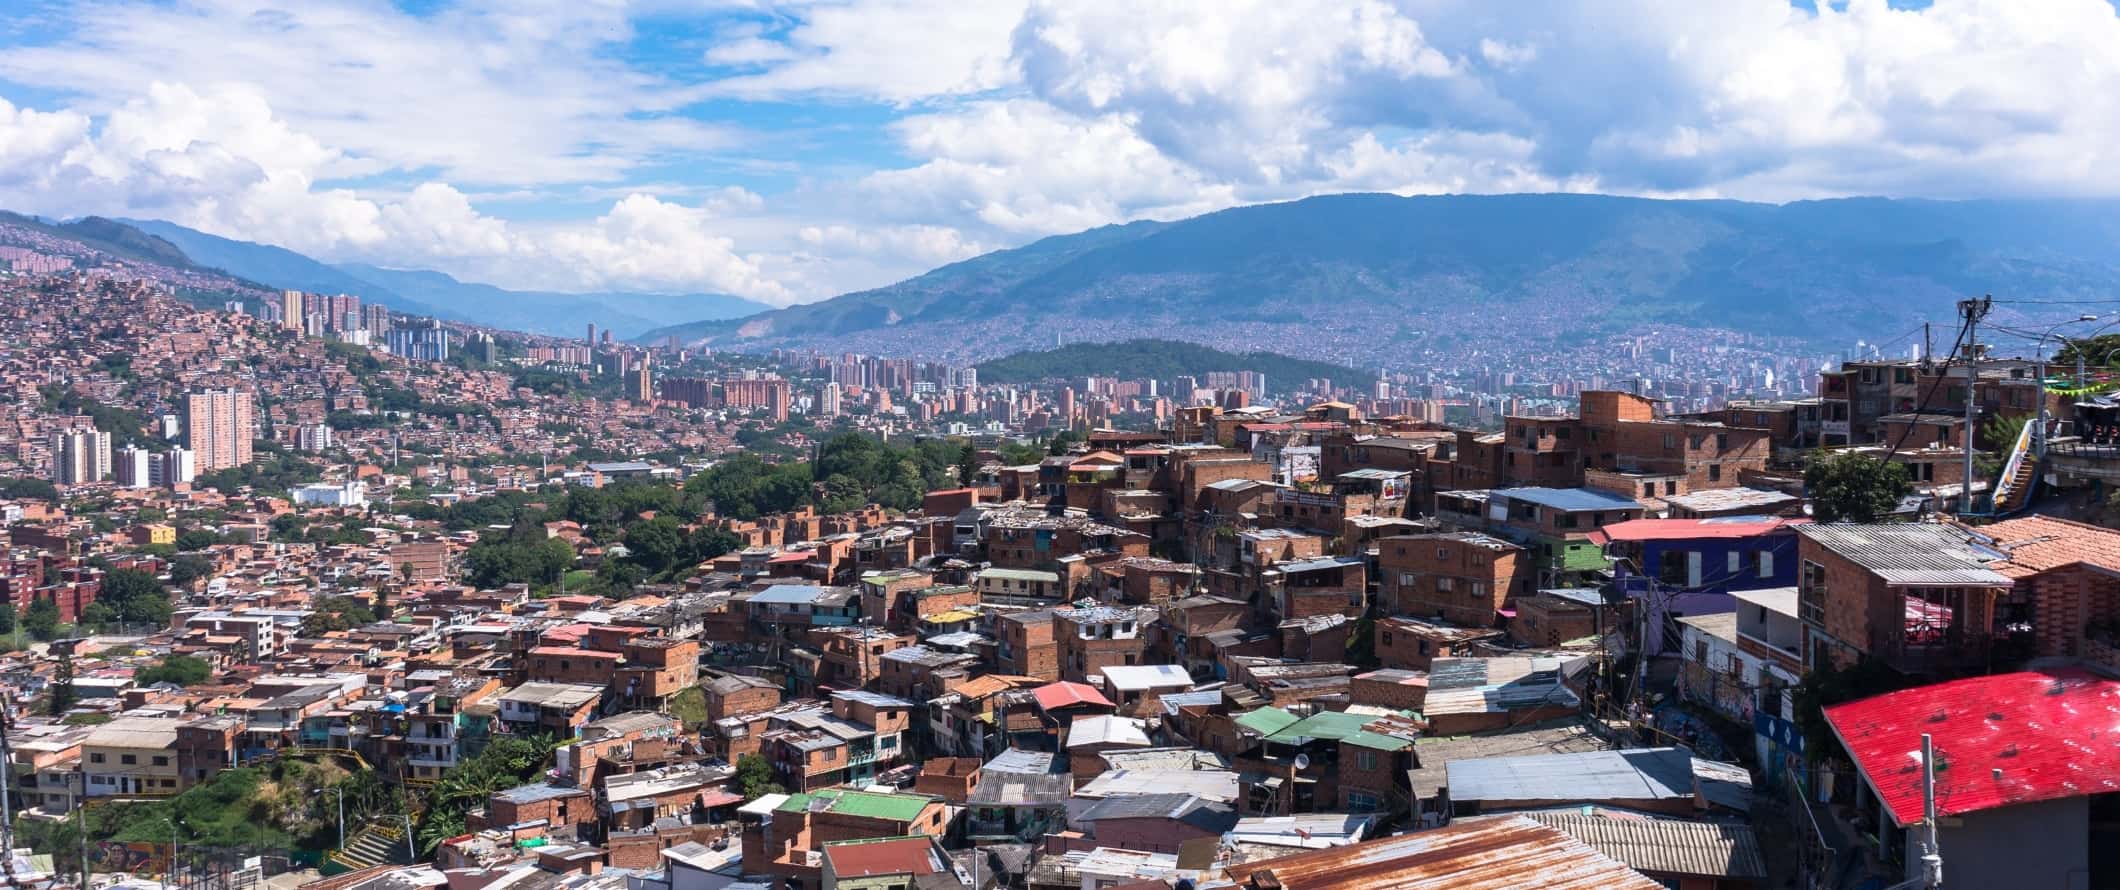 Vista panorâmica da cidade de Medellín, localizada numa colina